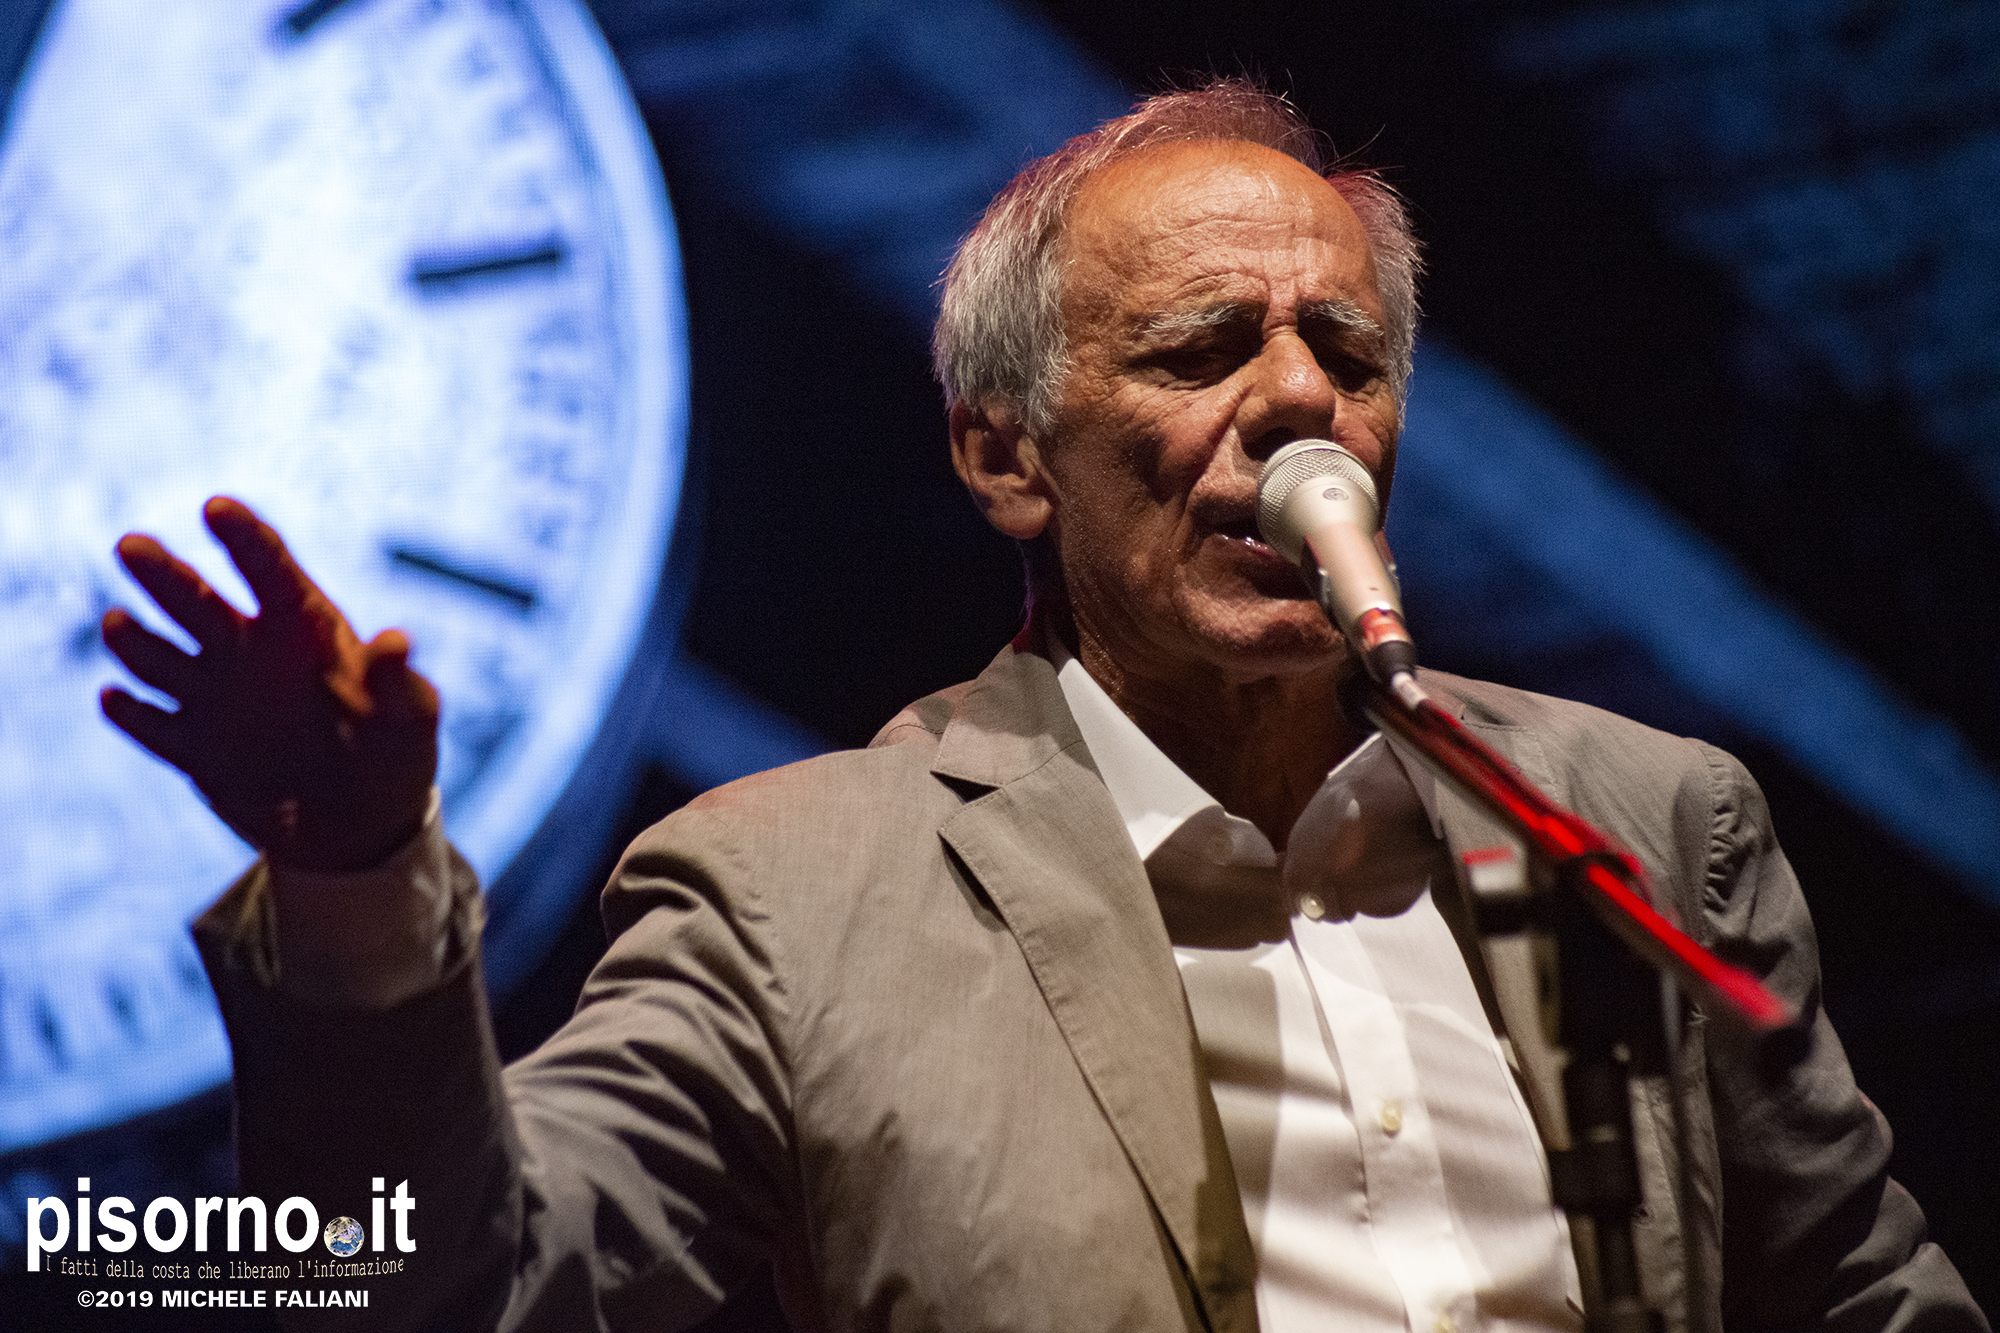 Roberto Vecchioni live @ Villa Bertelli (Forte dei Marmi, 16 Agosto 2019)